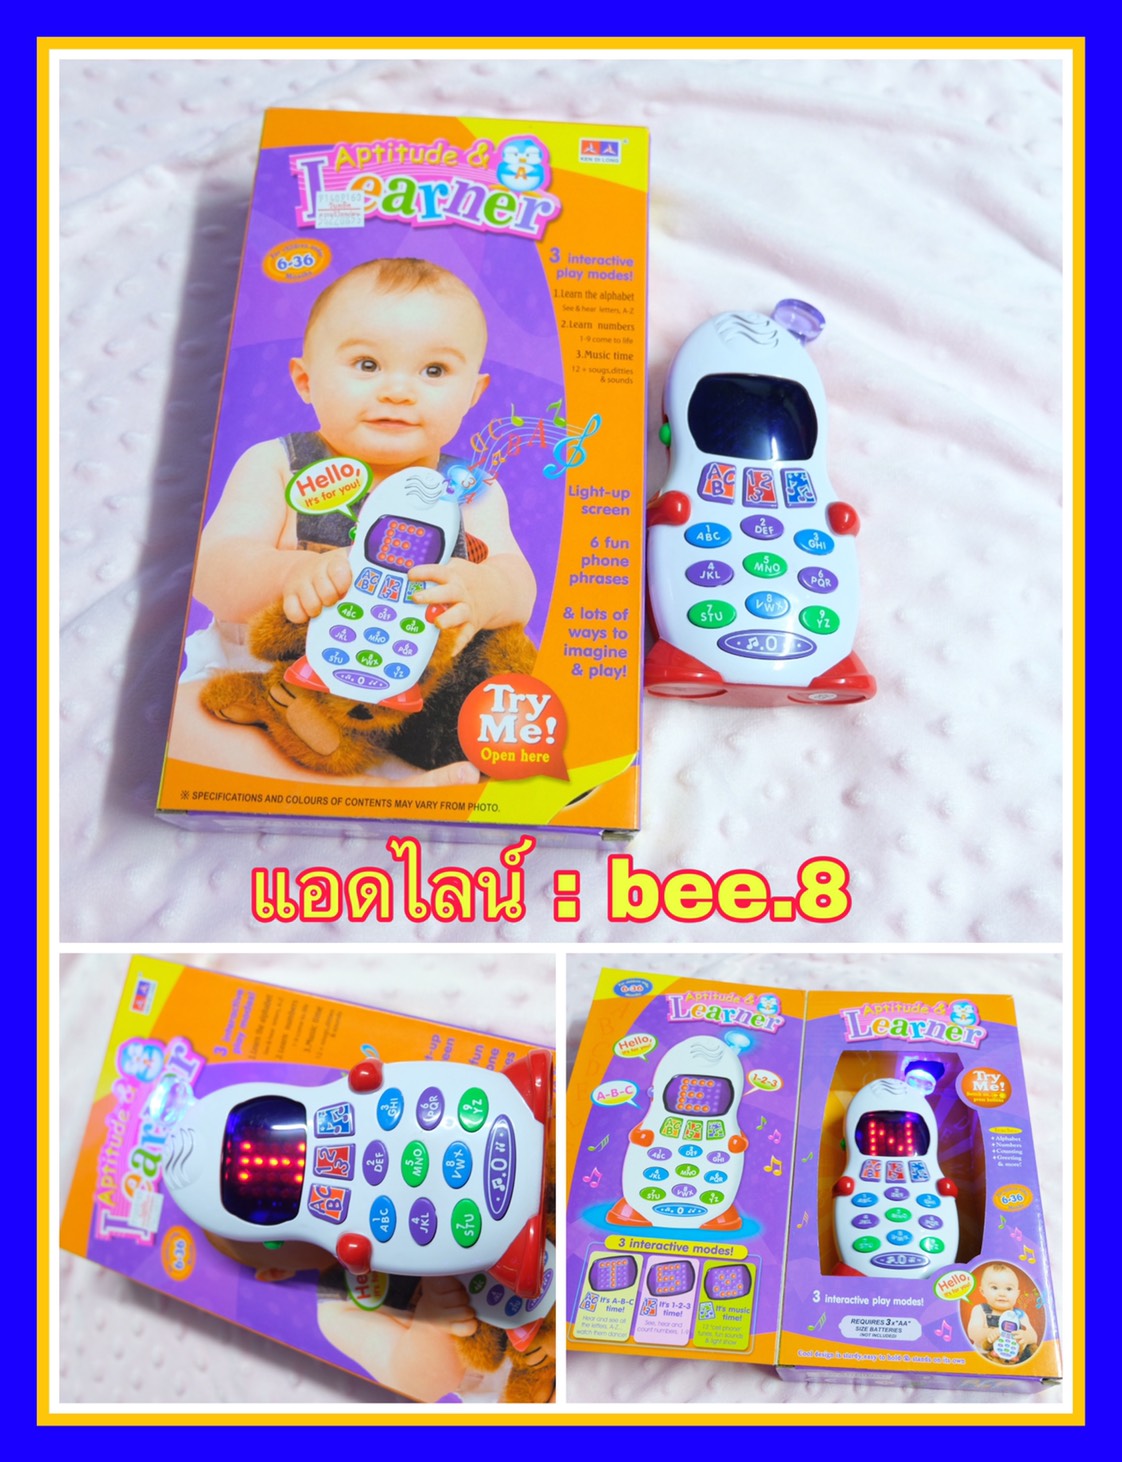 โทรศัพท์เด็ก ของเล่นเสริมพัฒนาการ ( โทรศัพท์ ดิจิตอลสีขาว ) ของเล่นเด็กมีเสียง โทรศัพท์มือถือคุณหนูน้อย สอนภาษาอังกฤษ มือถือเด็ก มีเสียง มีไฟ จอ LCD มาพร้อม 3 โหมดการเรียนรู้ สอนภาษา ABC สอนนับเลข 1-9 และเพลงหลากหลาย ของเล่นมีเสียง